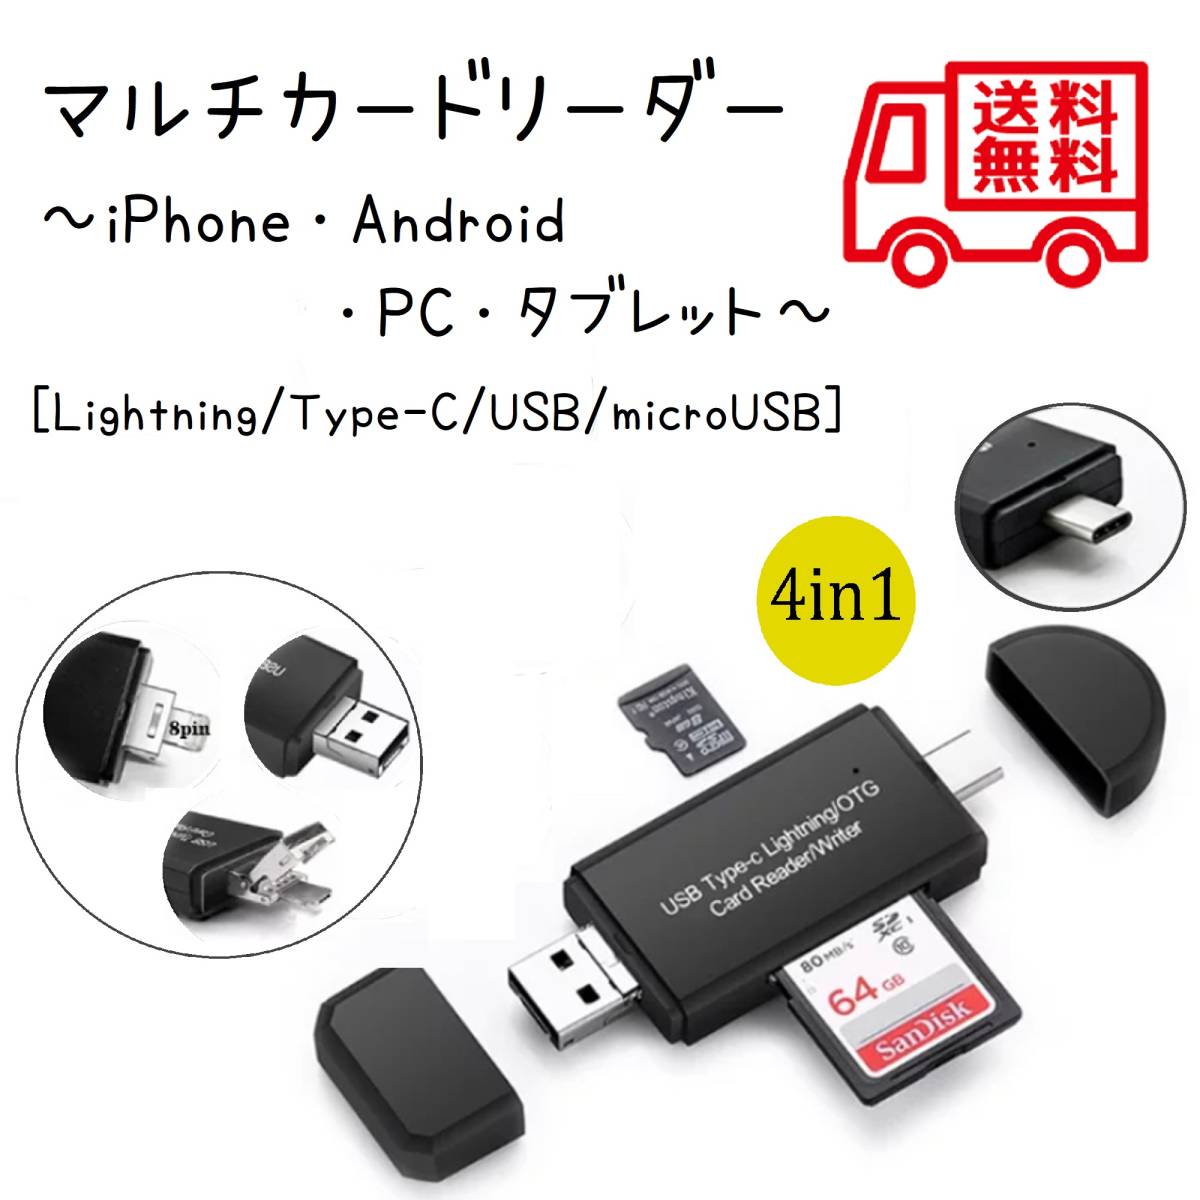 最新入荷 4in1 SD カードリーダー iPhone Lightning USB TYPE-C 2.0 USB-A Micro-USB 内蔵  メモリー スティック OTG機能 高速データ転送